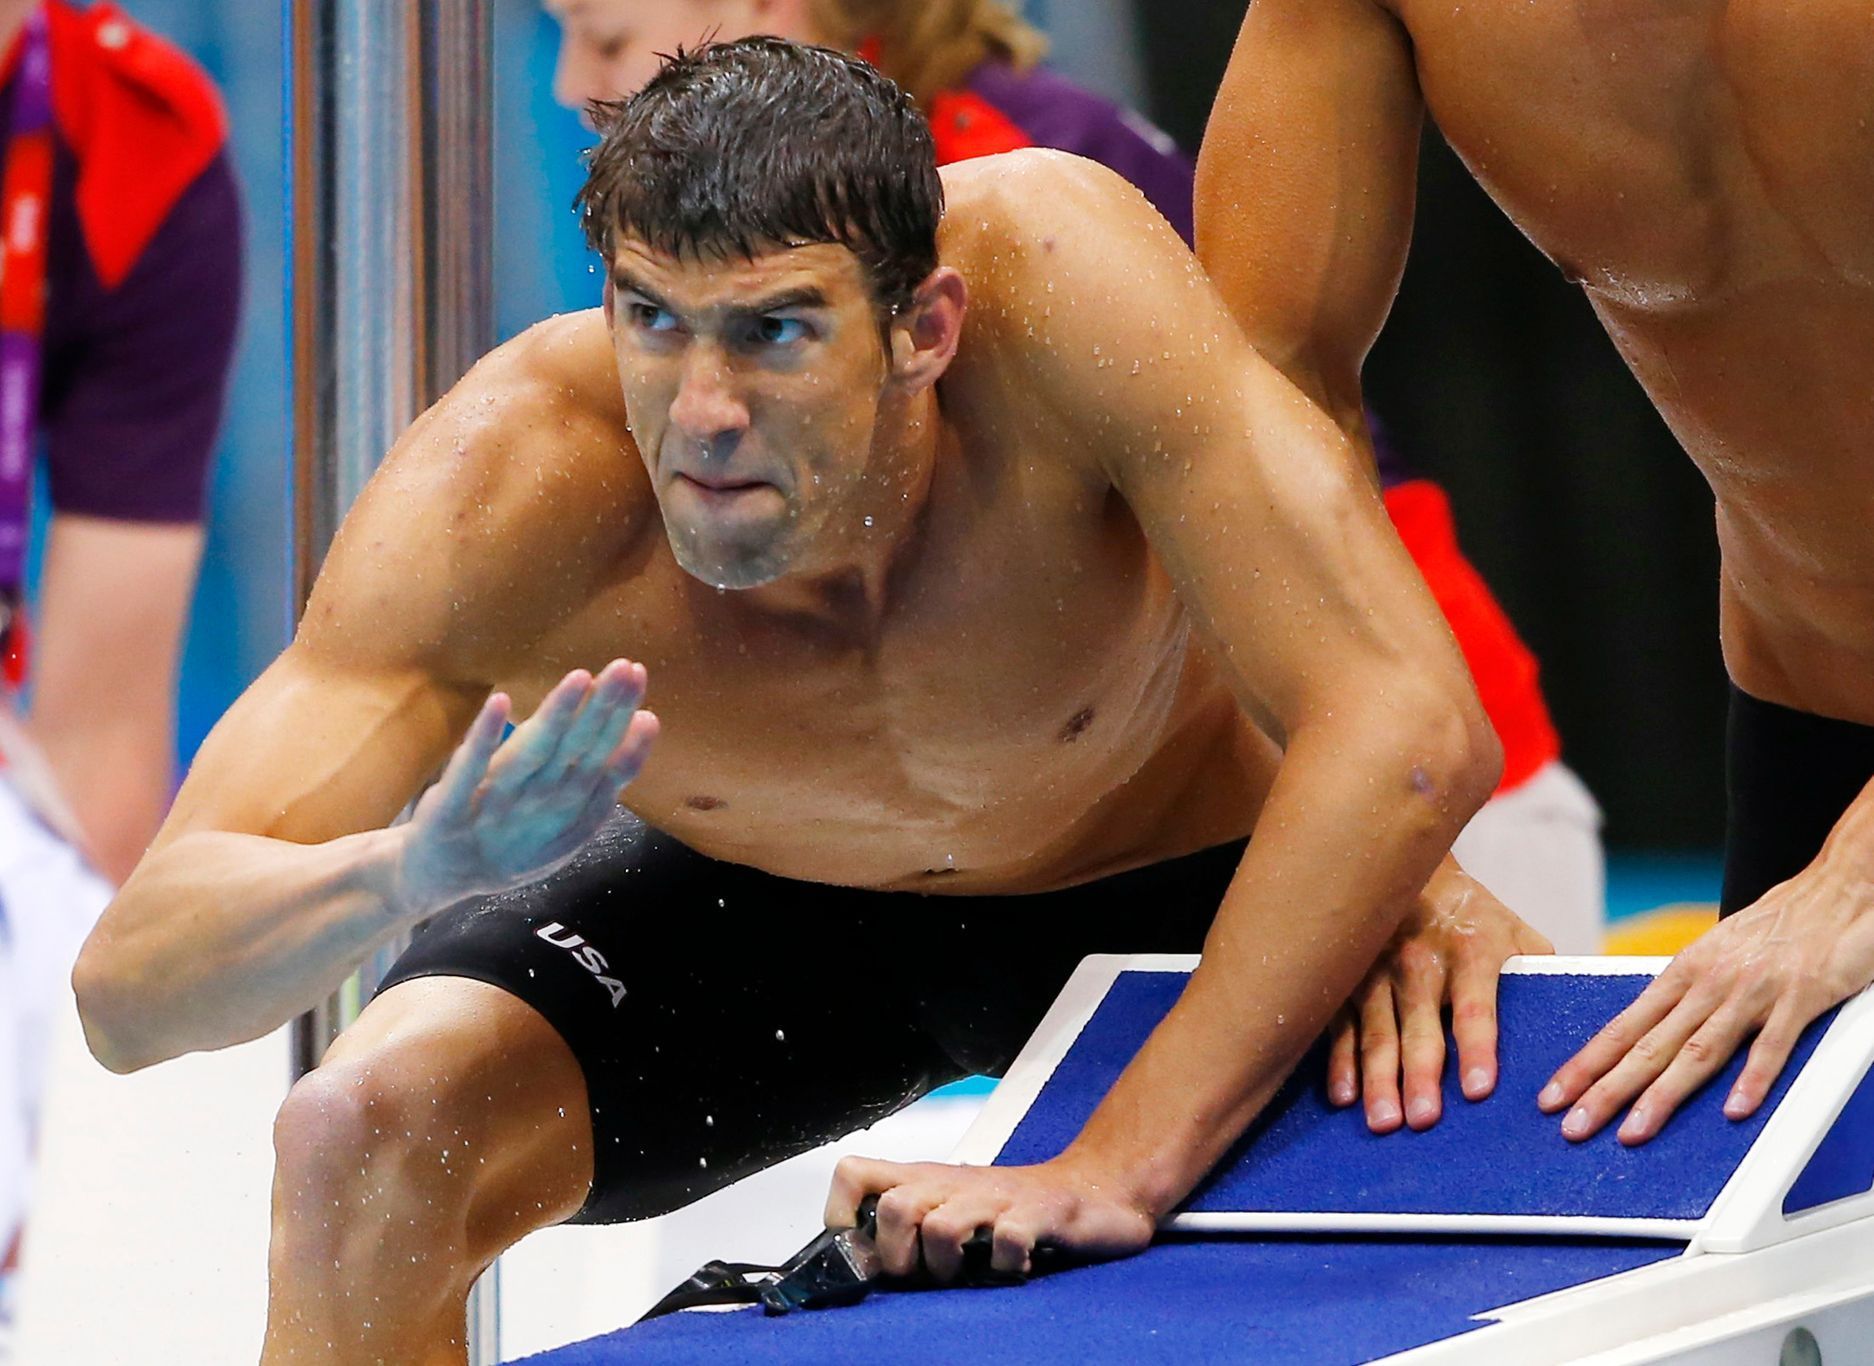 Michael Phelps povzbuzuje Ryana Lochteho na olympiádě v Londýně